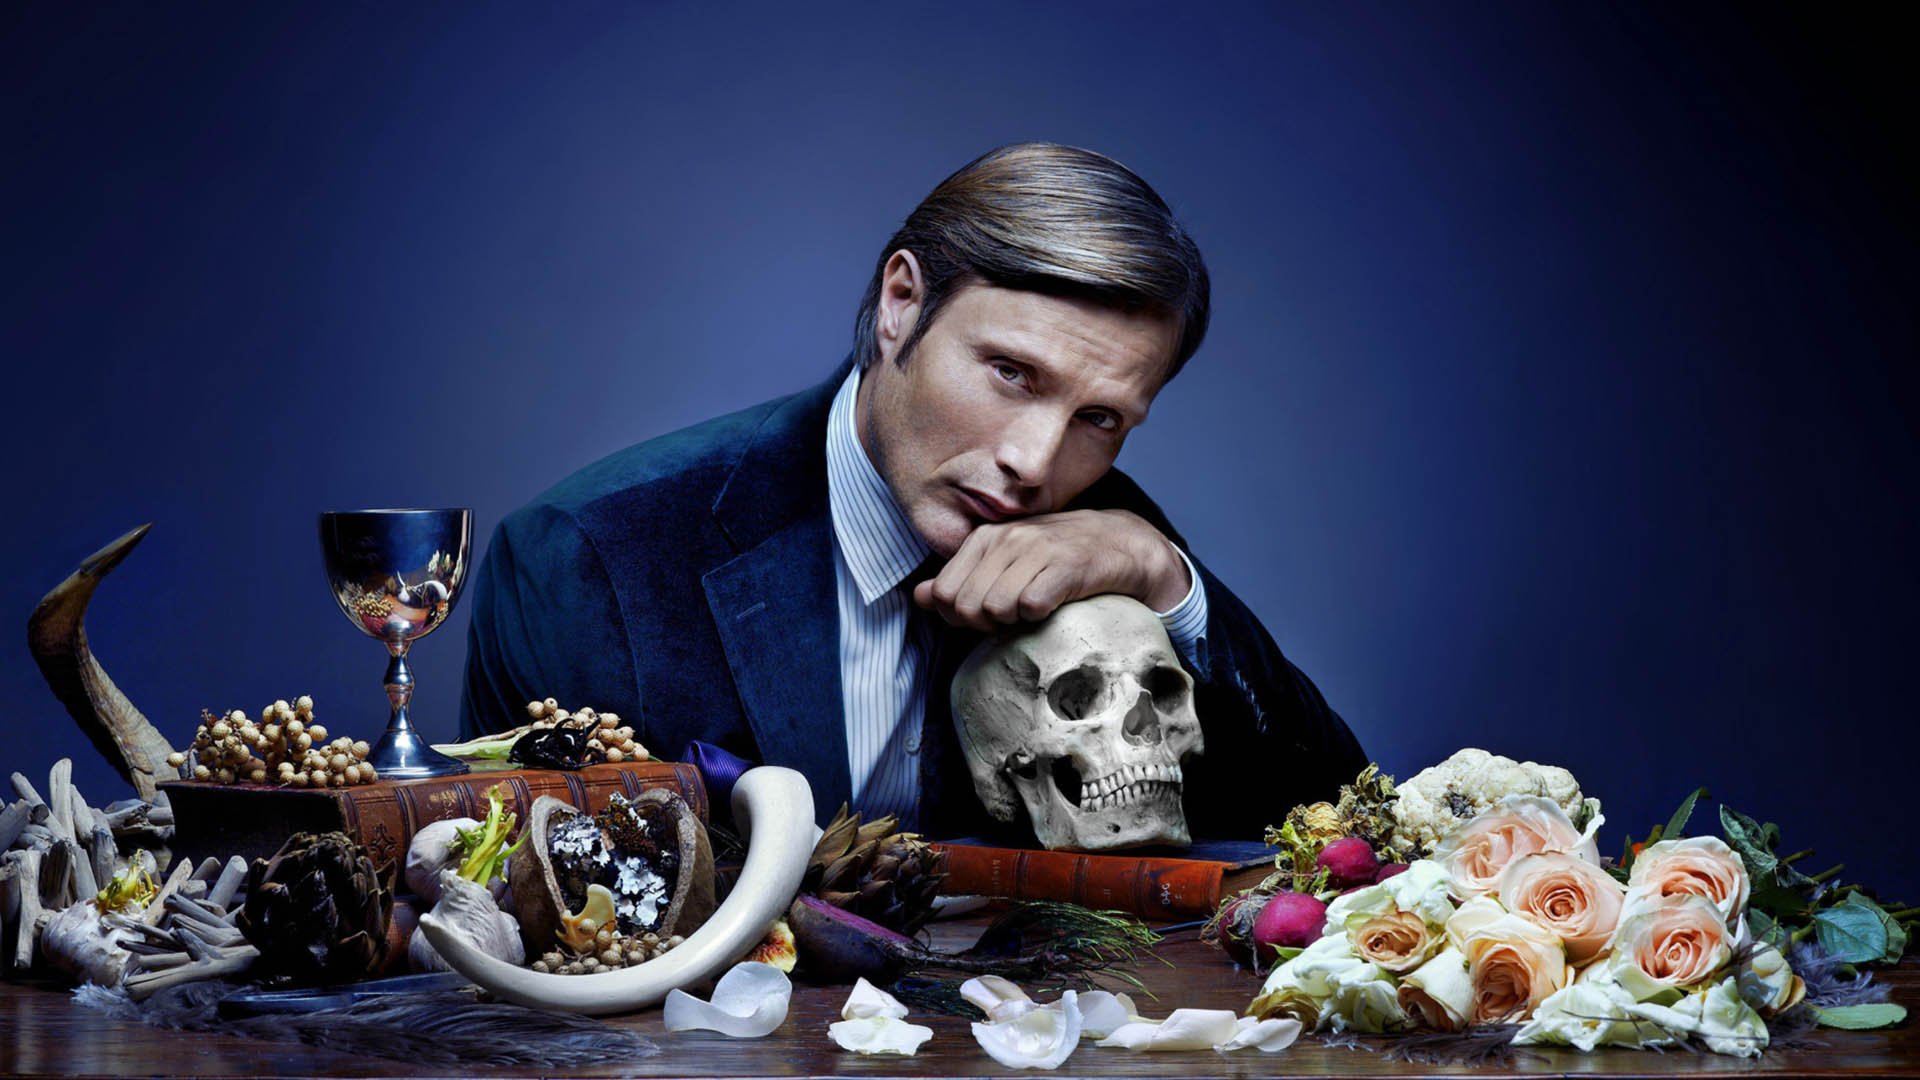 مدس میکلسن پشت یک میز در سریال Hannibal و یک جمجمه در دست او